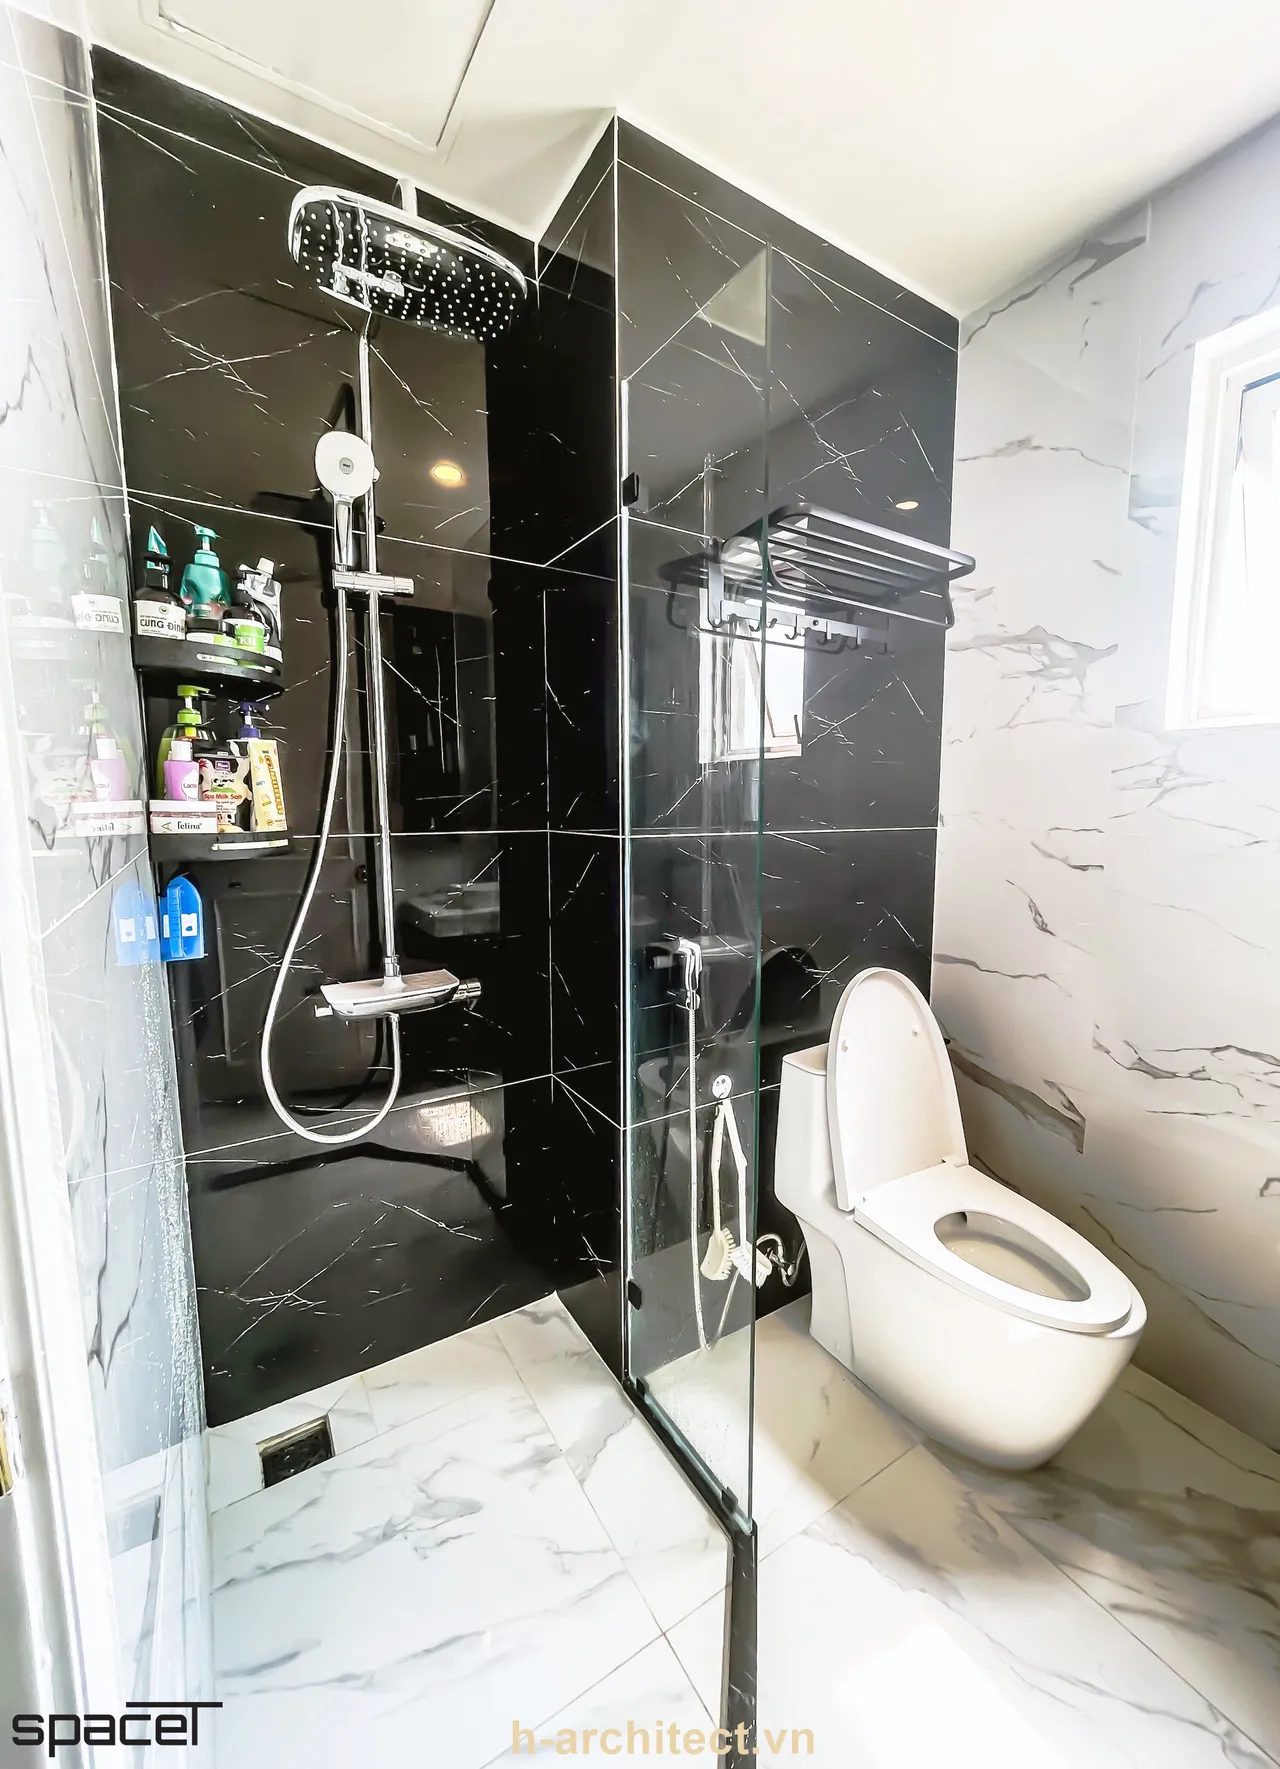 Hoàn thiện nội thất phòng tắm, nhà vệ sinh Căn hộ chung cư An Phú phong cách Tân cổ điển Neo Classic